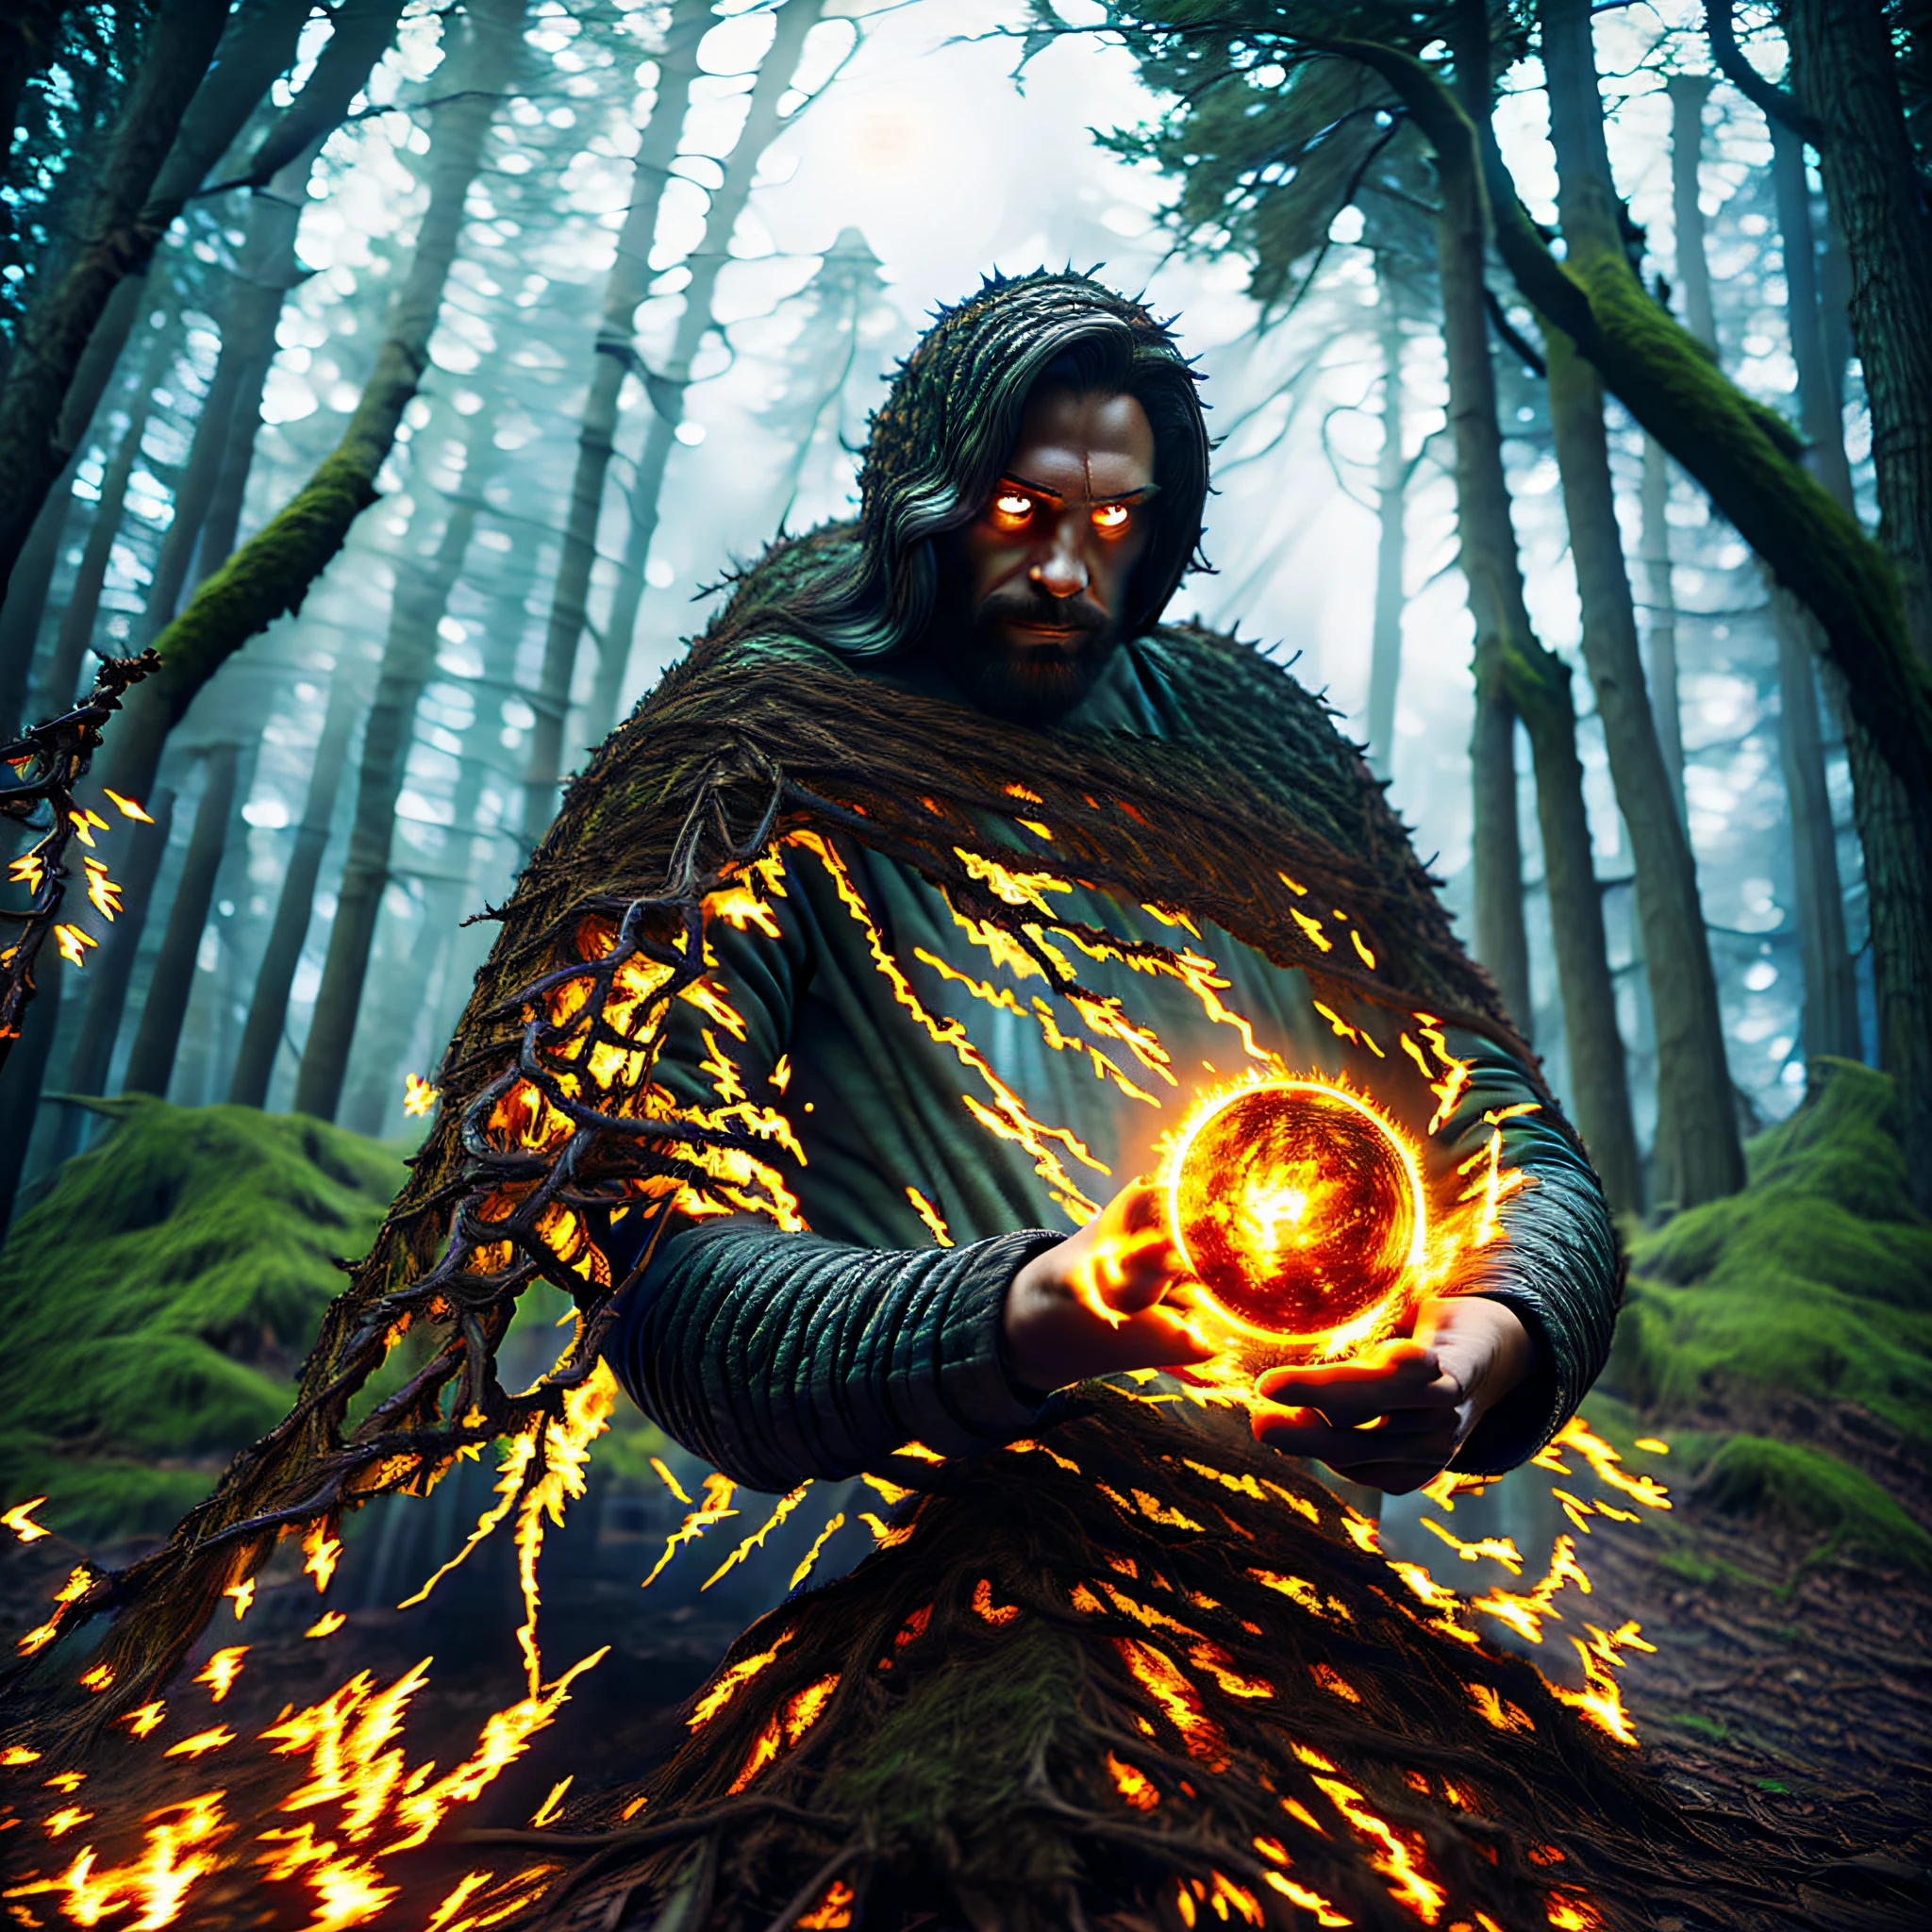 mago, en el bosque oscuro, luz de la luna, Bola de fuego en las manos, 5 elementos